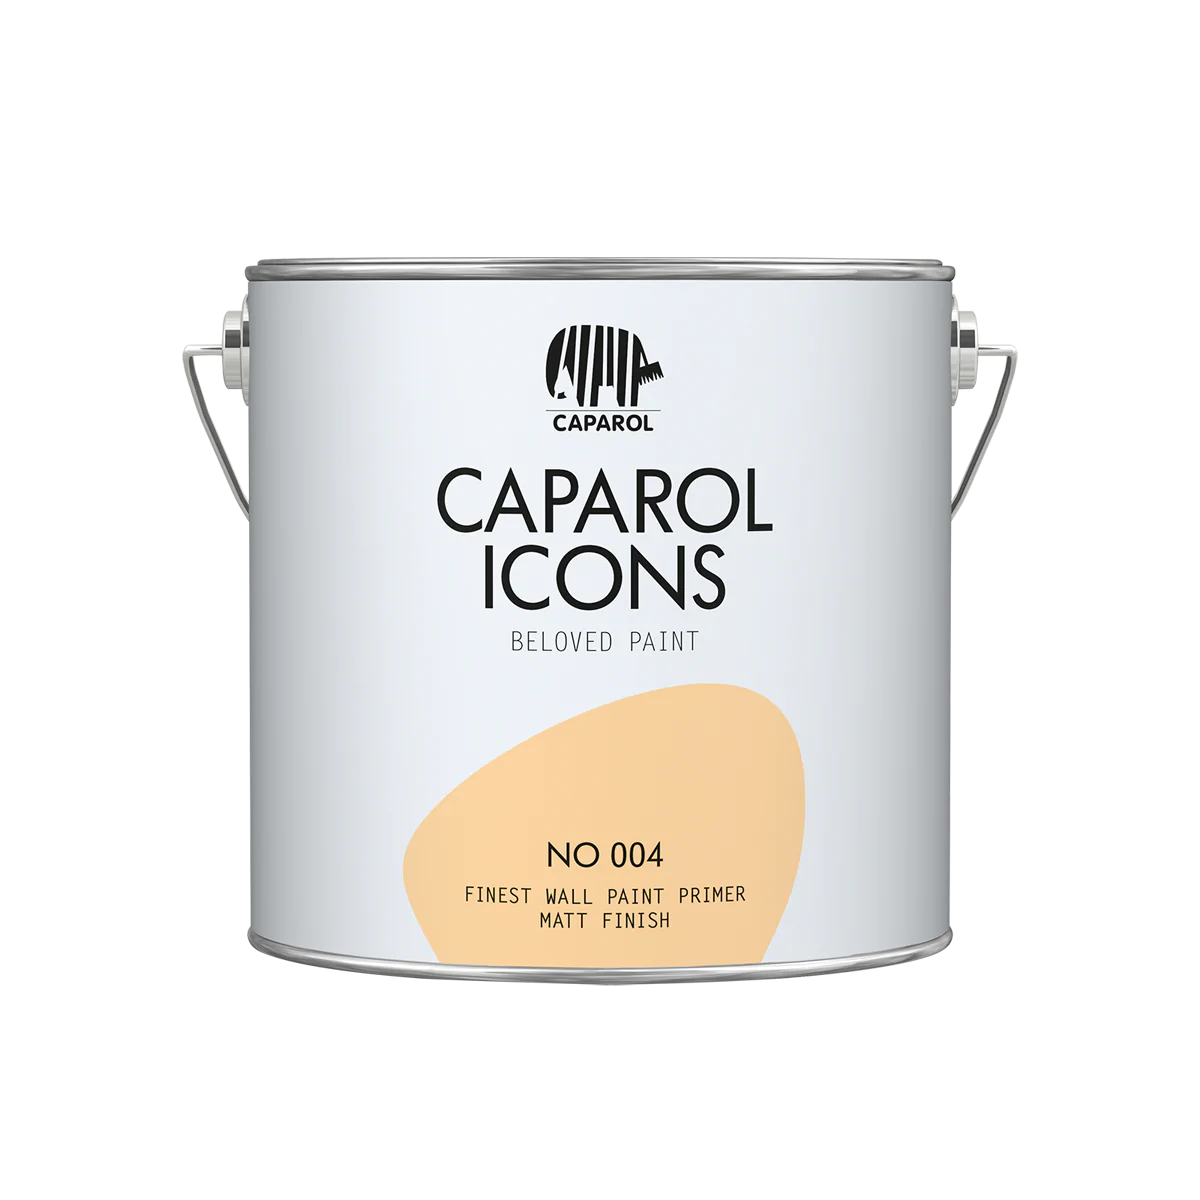 Caparol ICONS FINEST WALL PRIMER NO 004, 2,5l